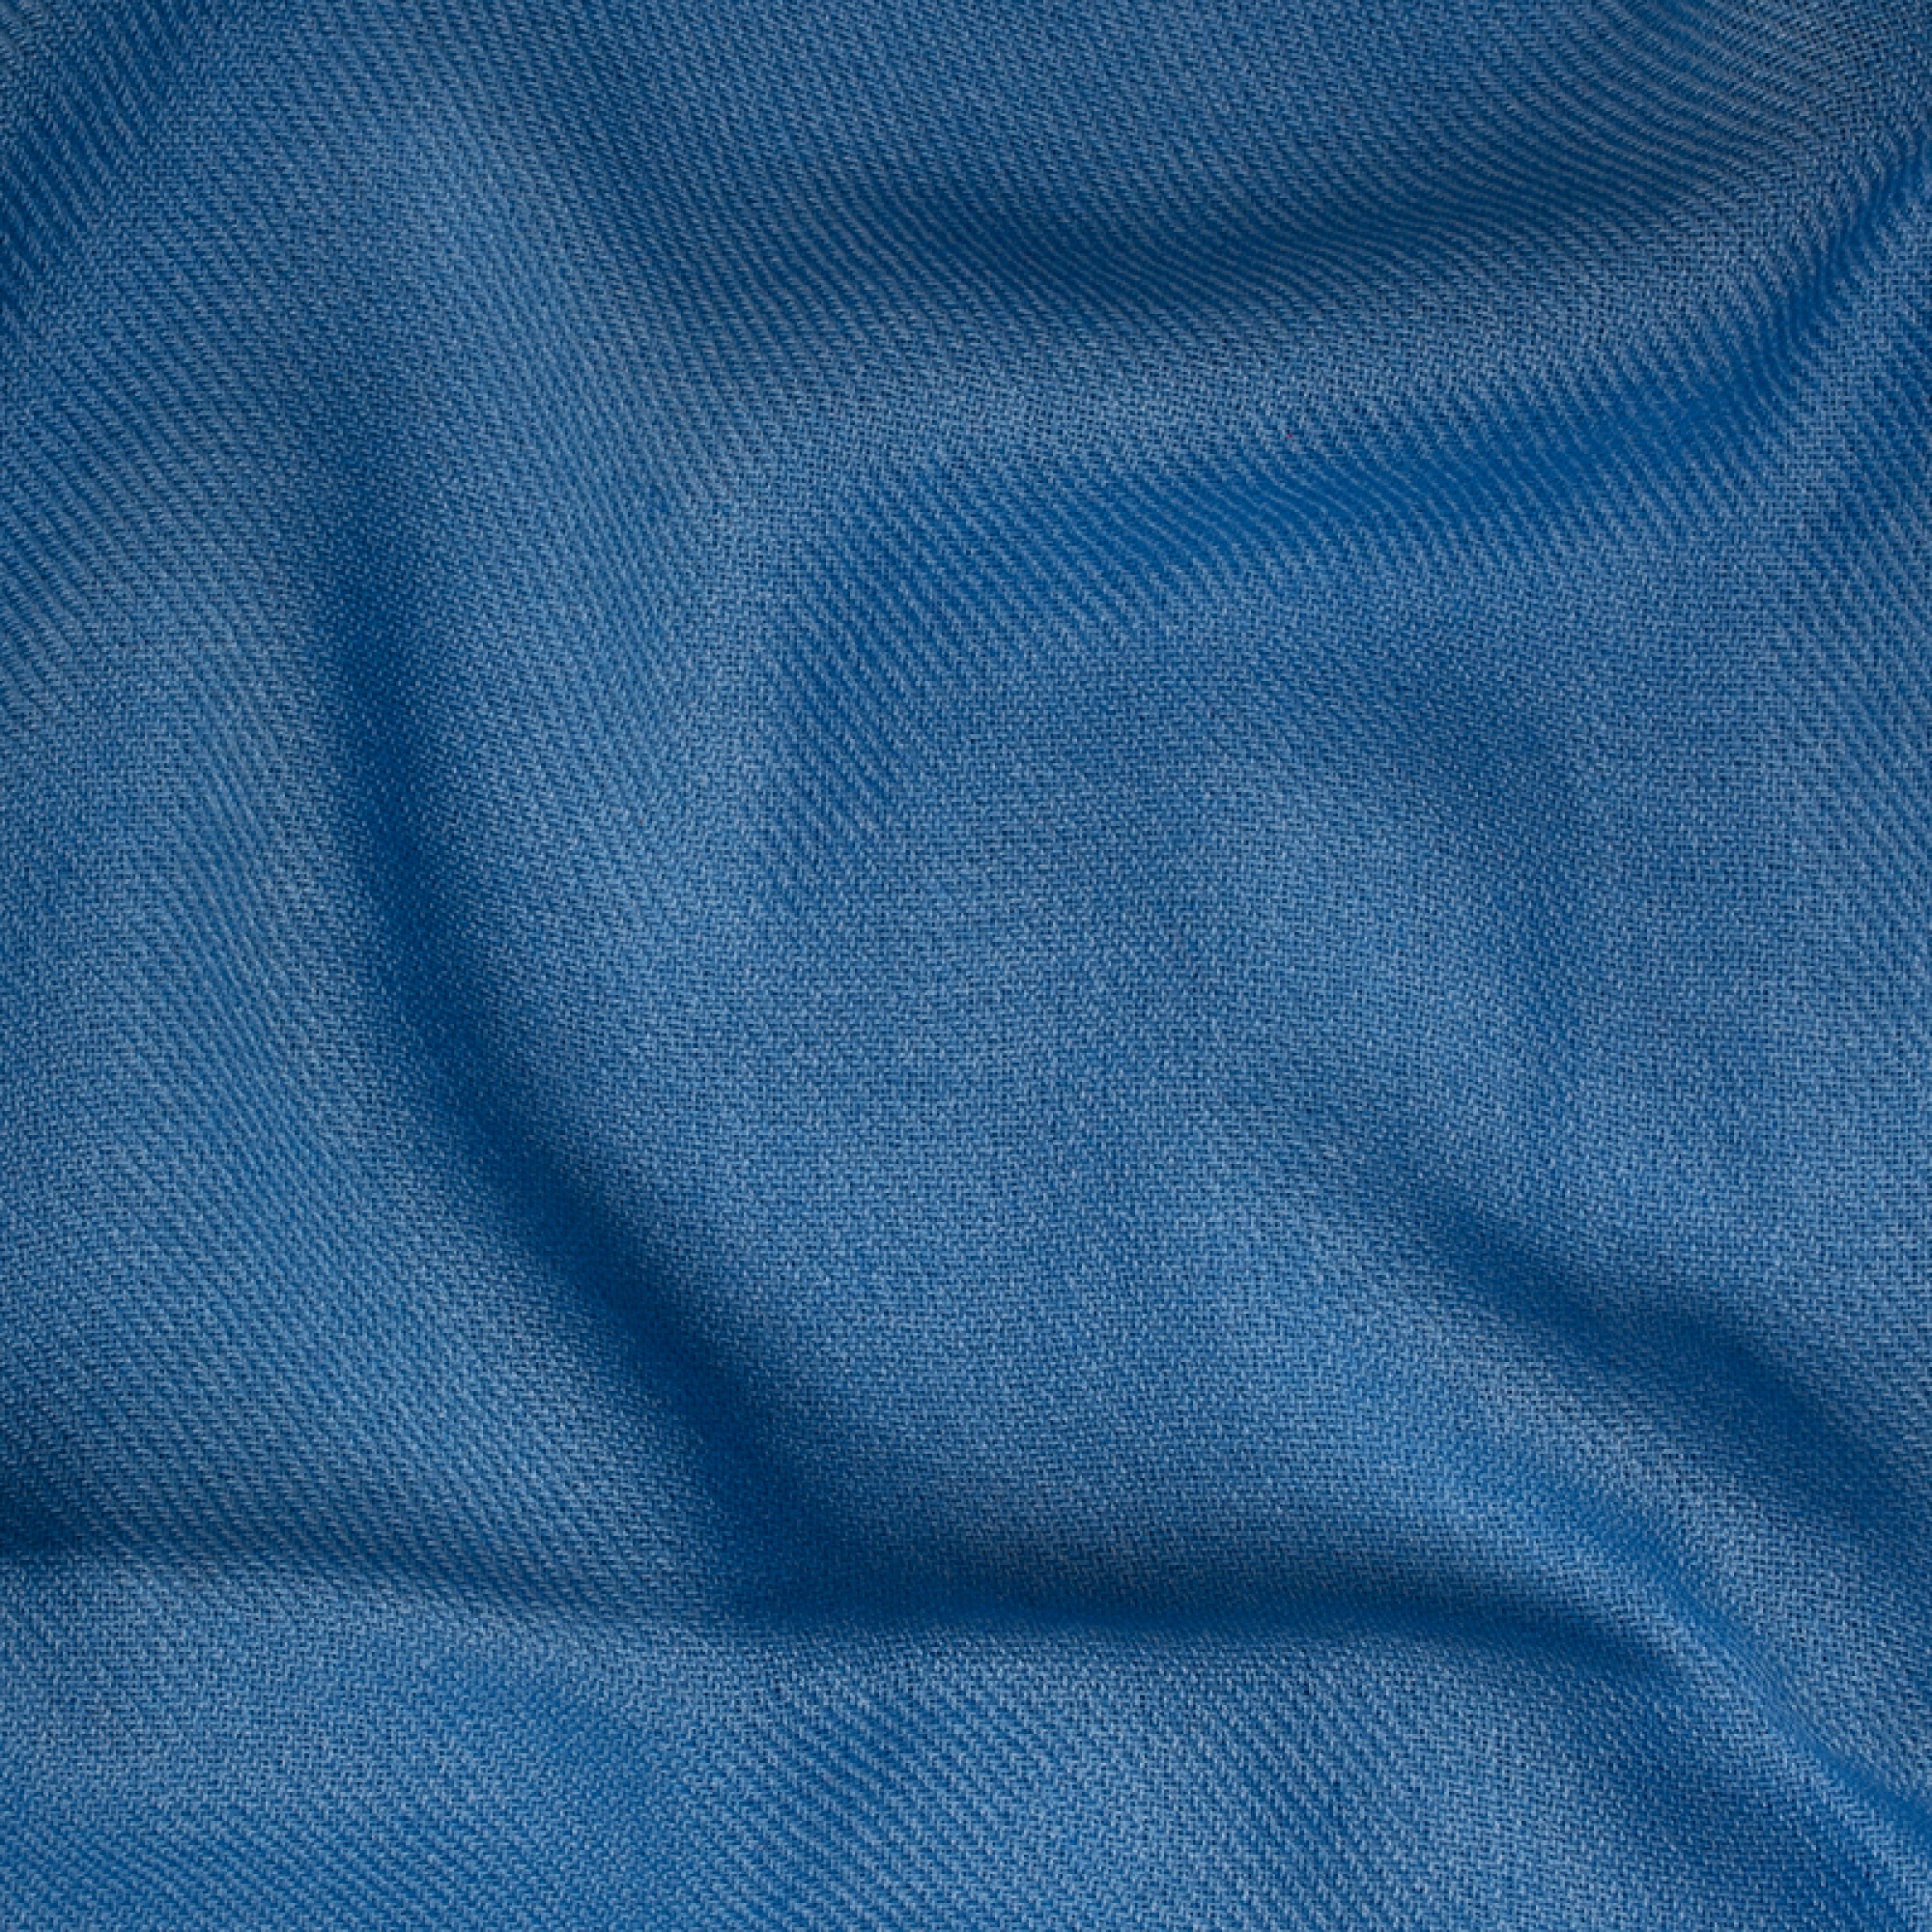 Cachemire accessoires couvertures plaids toodoo plain l 220 x 220 bleu miro 220x220cm